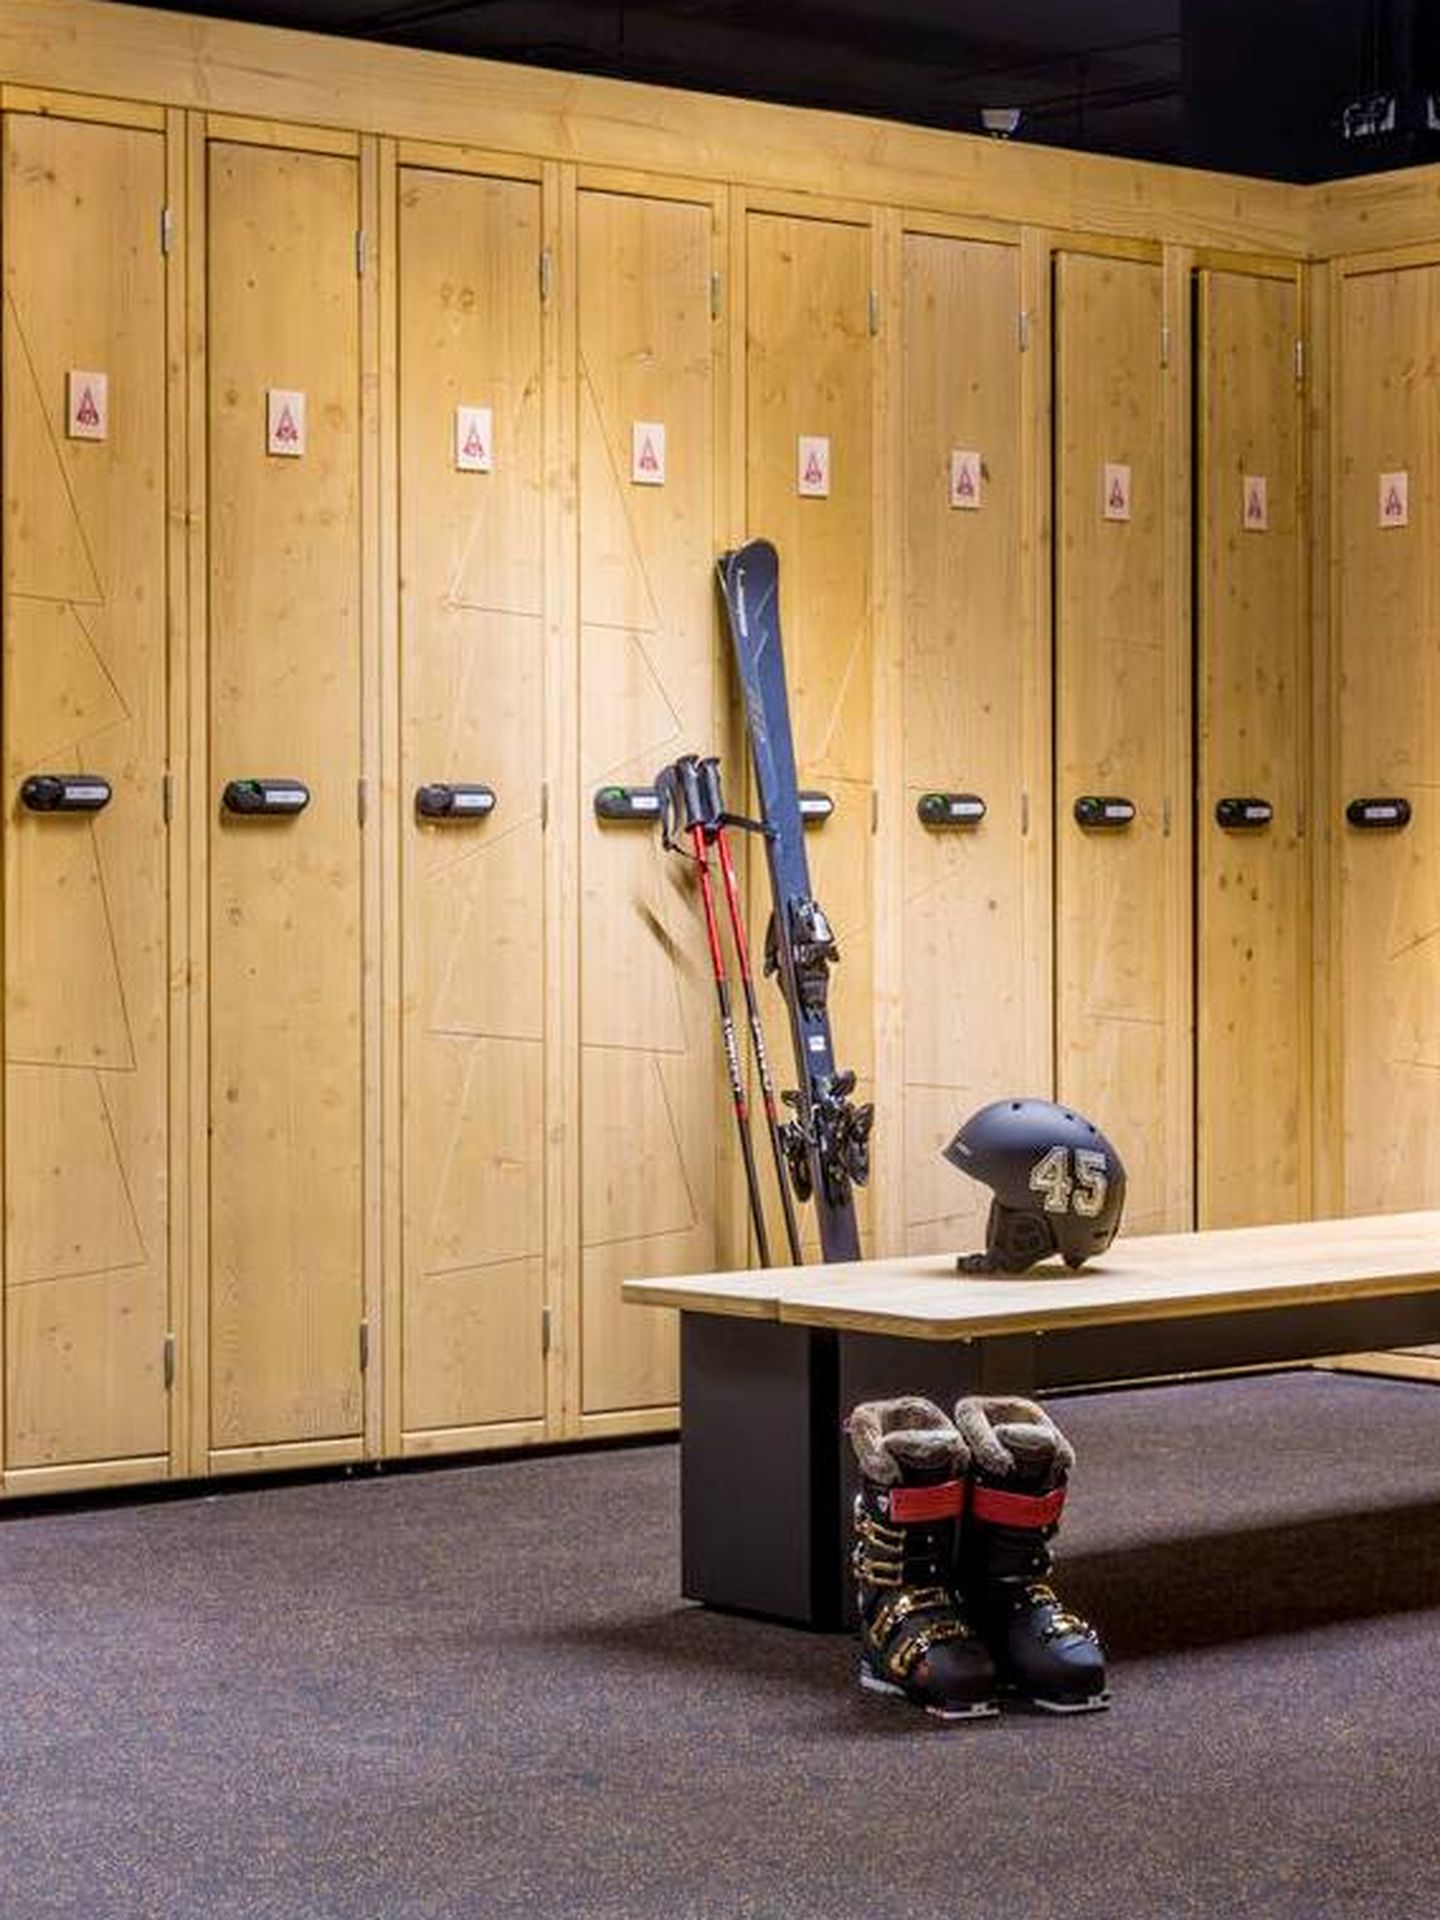 Dispones de una inmensa ski room con tu propia taquilla pertrechada con todo lo necesario para esquiar. (Cortesía)